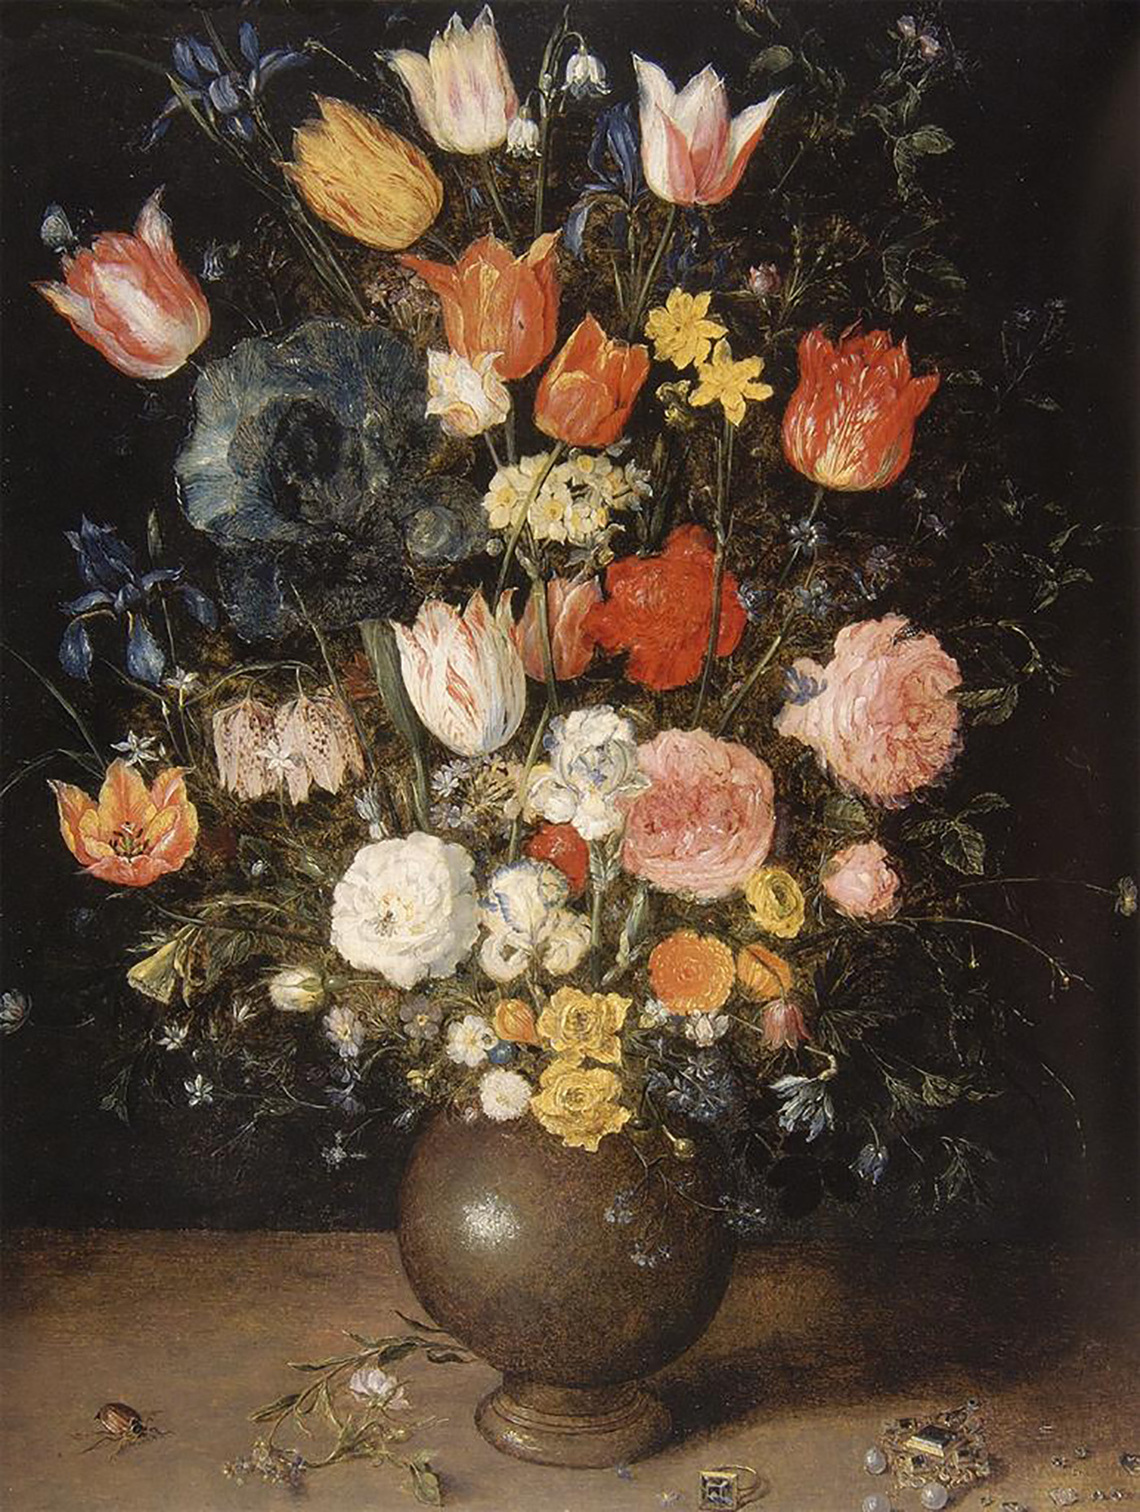 Flowers in a Ceramic Vase (Switzerland)